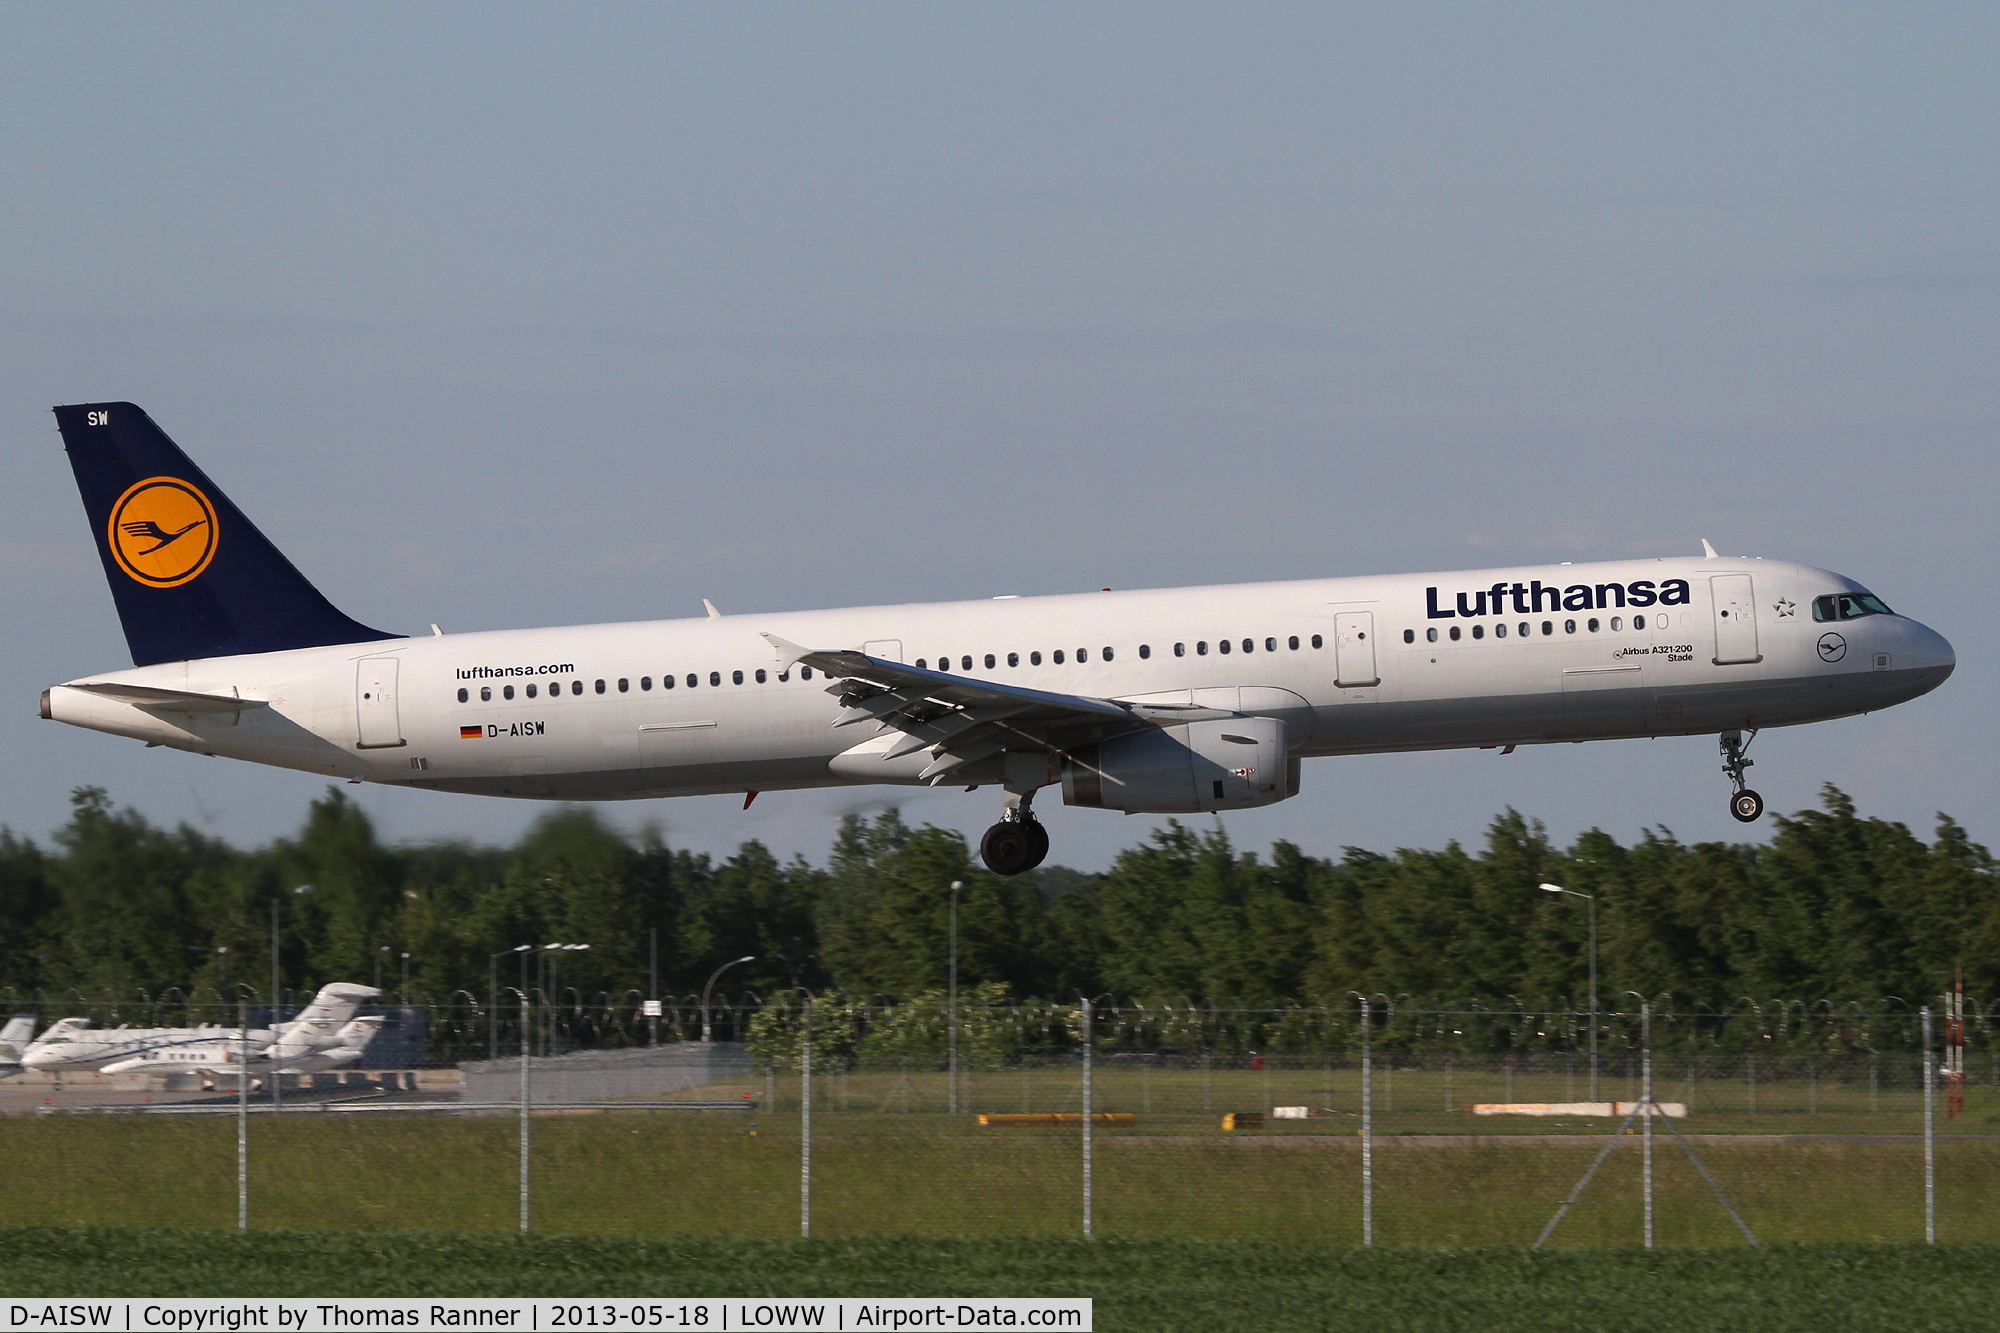 D-AISW, 2009 Airbus A321-231 C/N 4087, Lufthansa Airbus A321